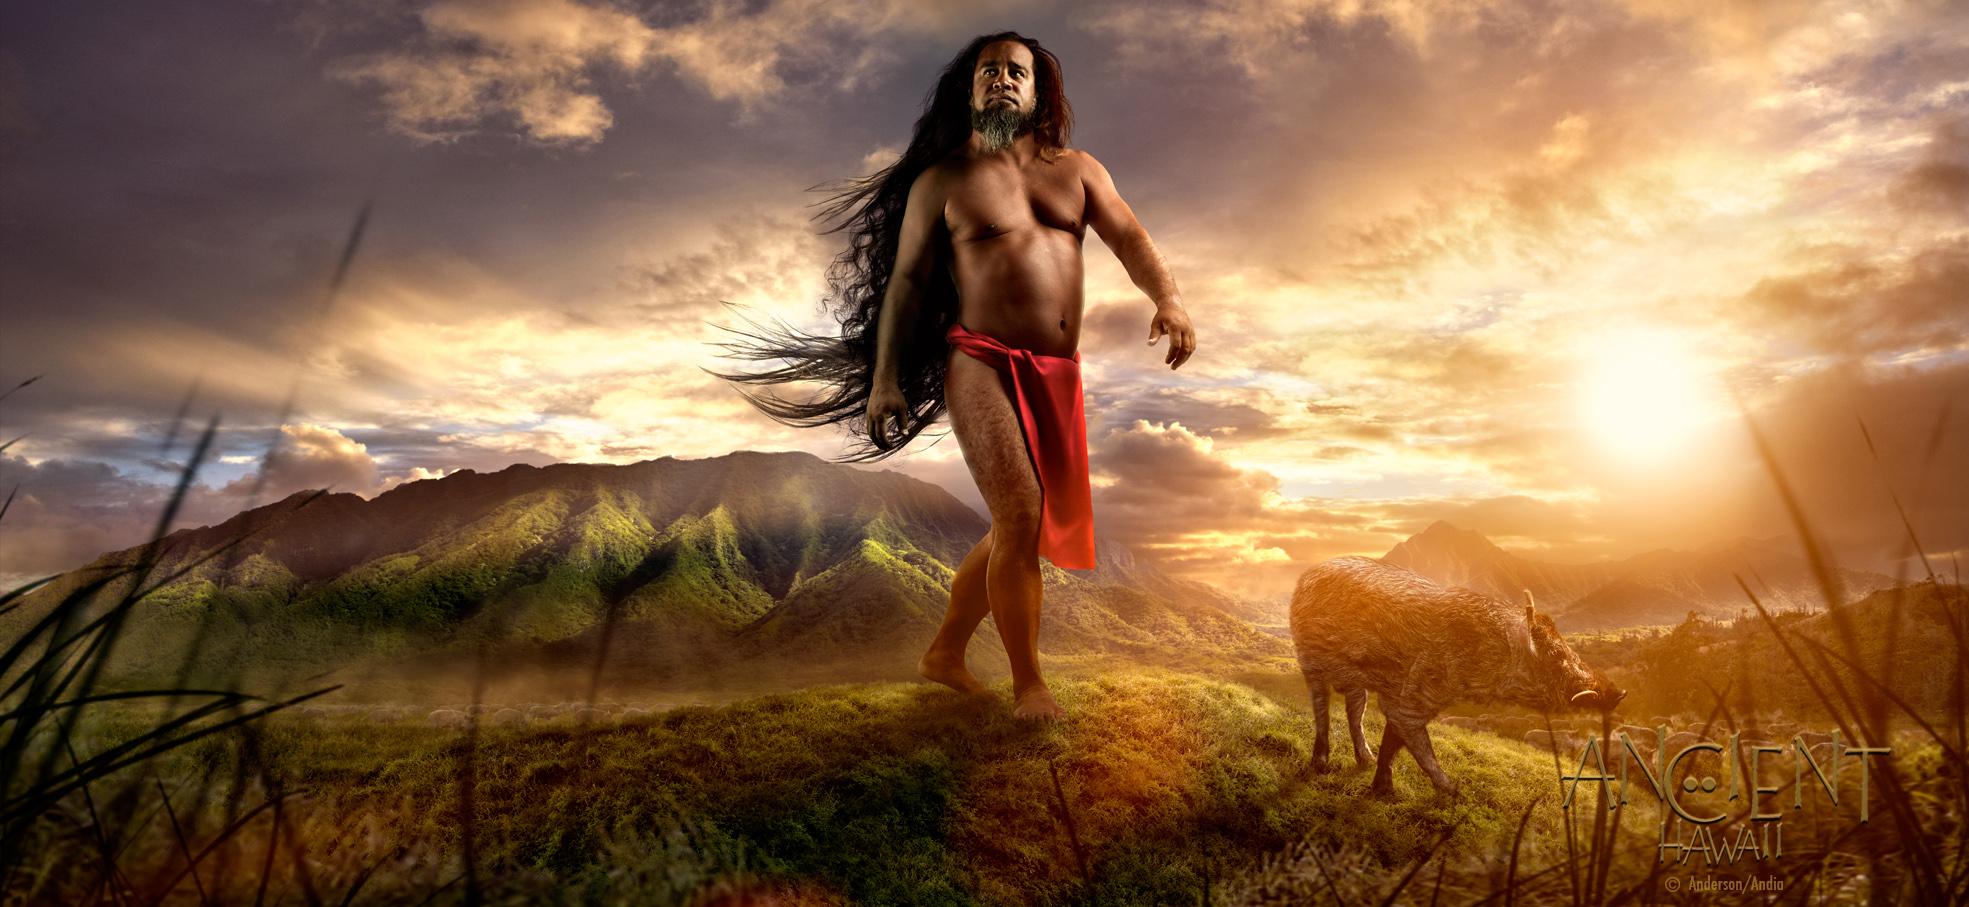 SCORNED - Ho'owaha waha Inspired by the legends of Kamapua'a, the Pig God. | ANCIENT HAWAII